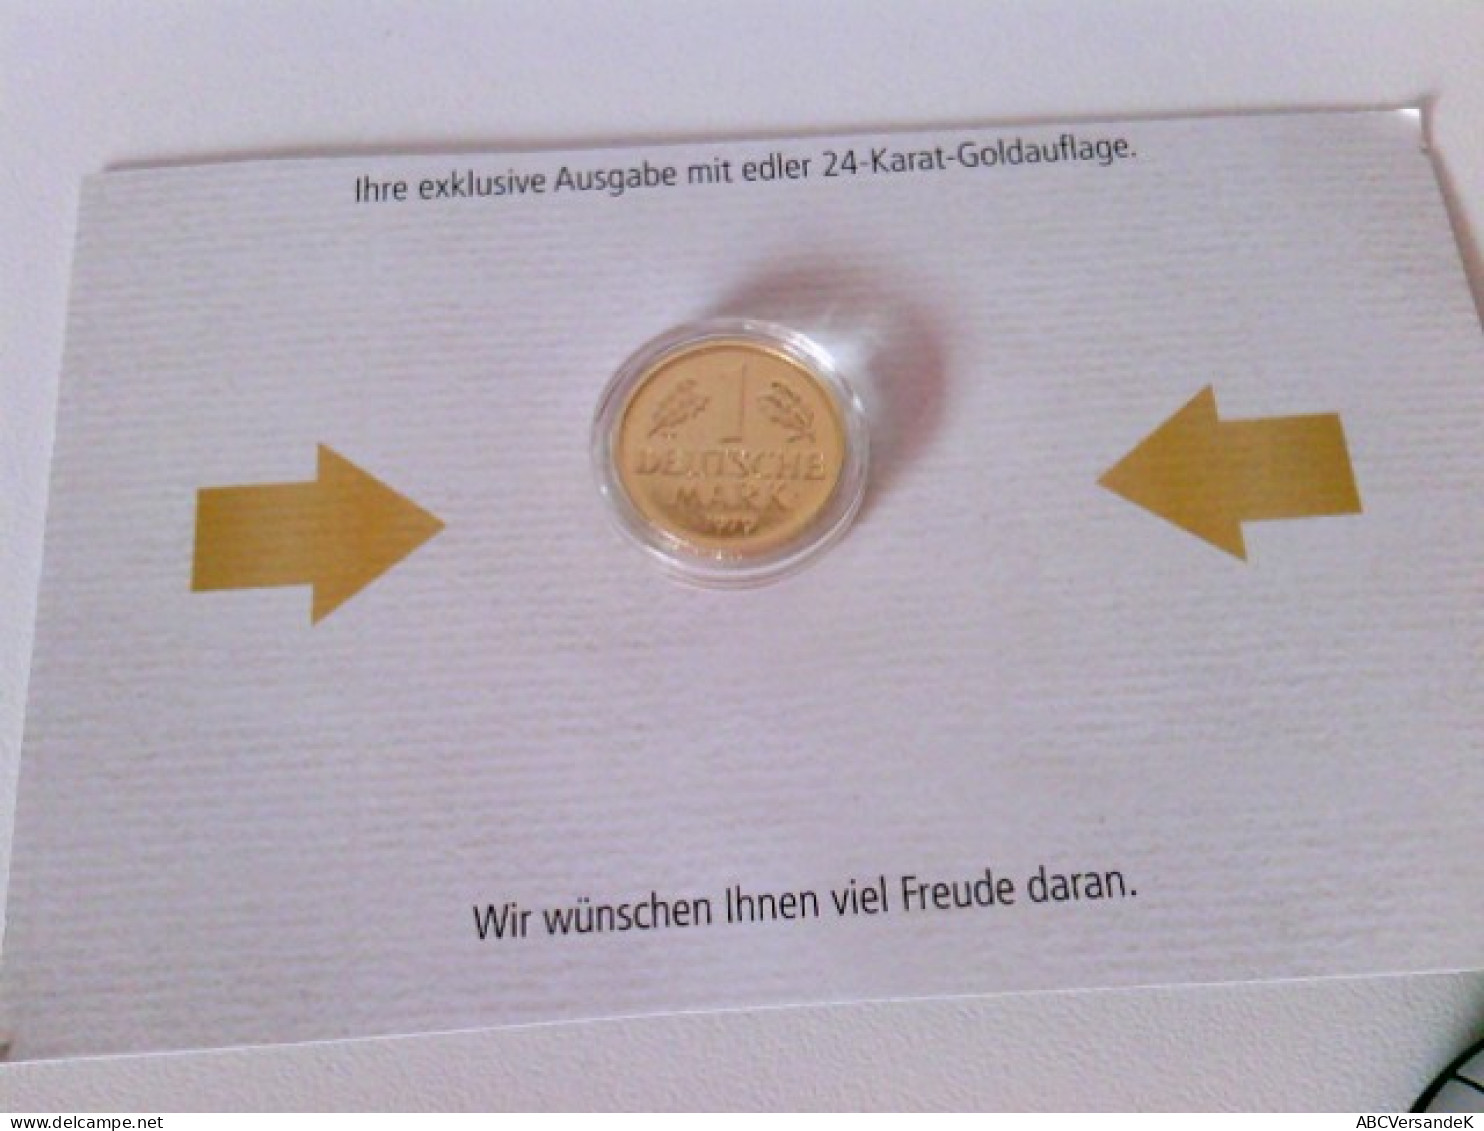 Münzen/ Medaillen: Hier 5 X 1 DM 1971, 1979, 1980, 1990, 1991 Vergoldet, Deutsche Mark Mit 24 Karat Goldauflag - Numismatique